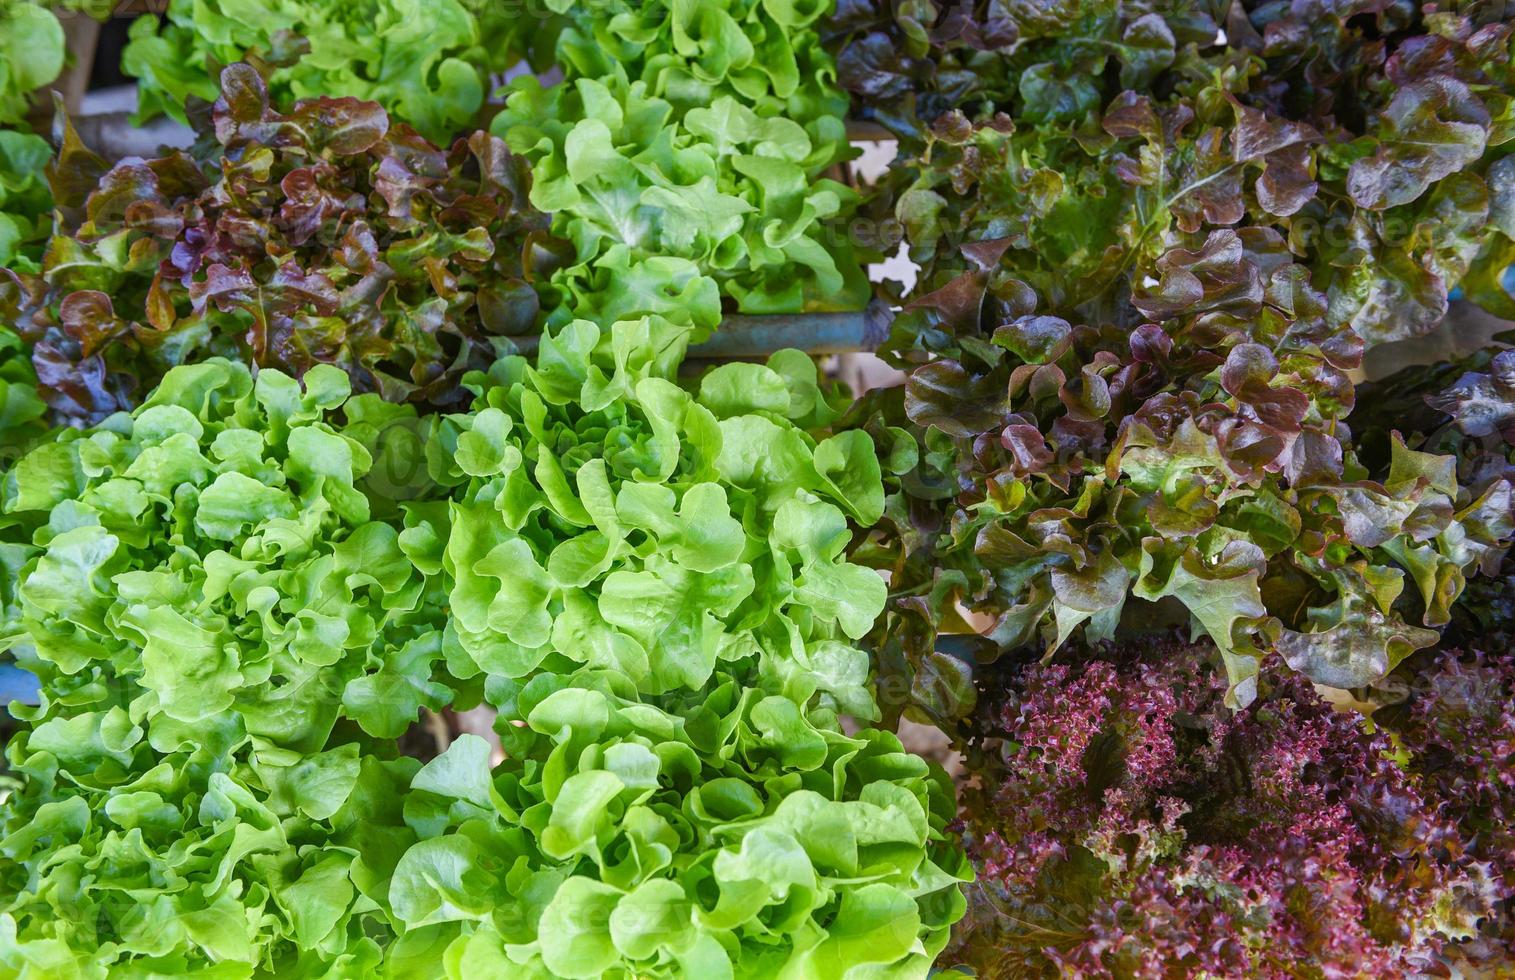 hydroponisk sallad växer i trädgård hydroponisk gård sallad sallad ekologisk för hälsokost, växthusgrönsak på vattenrör med grön ek och röd ek. foto